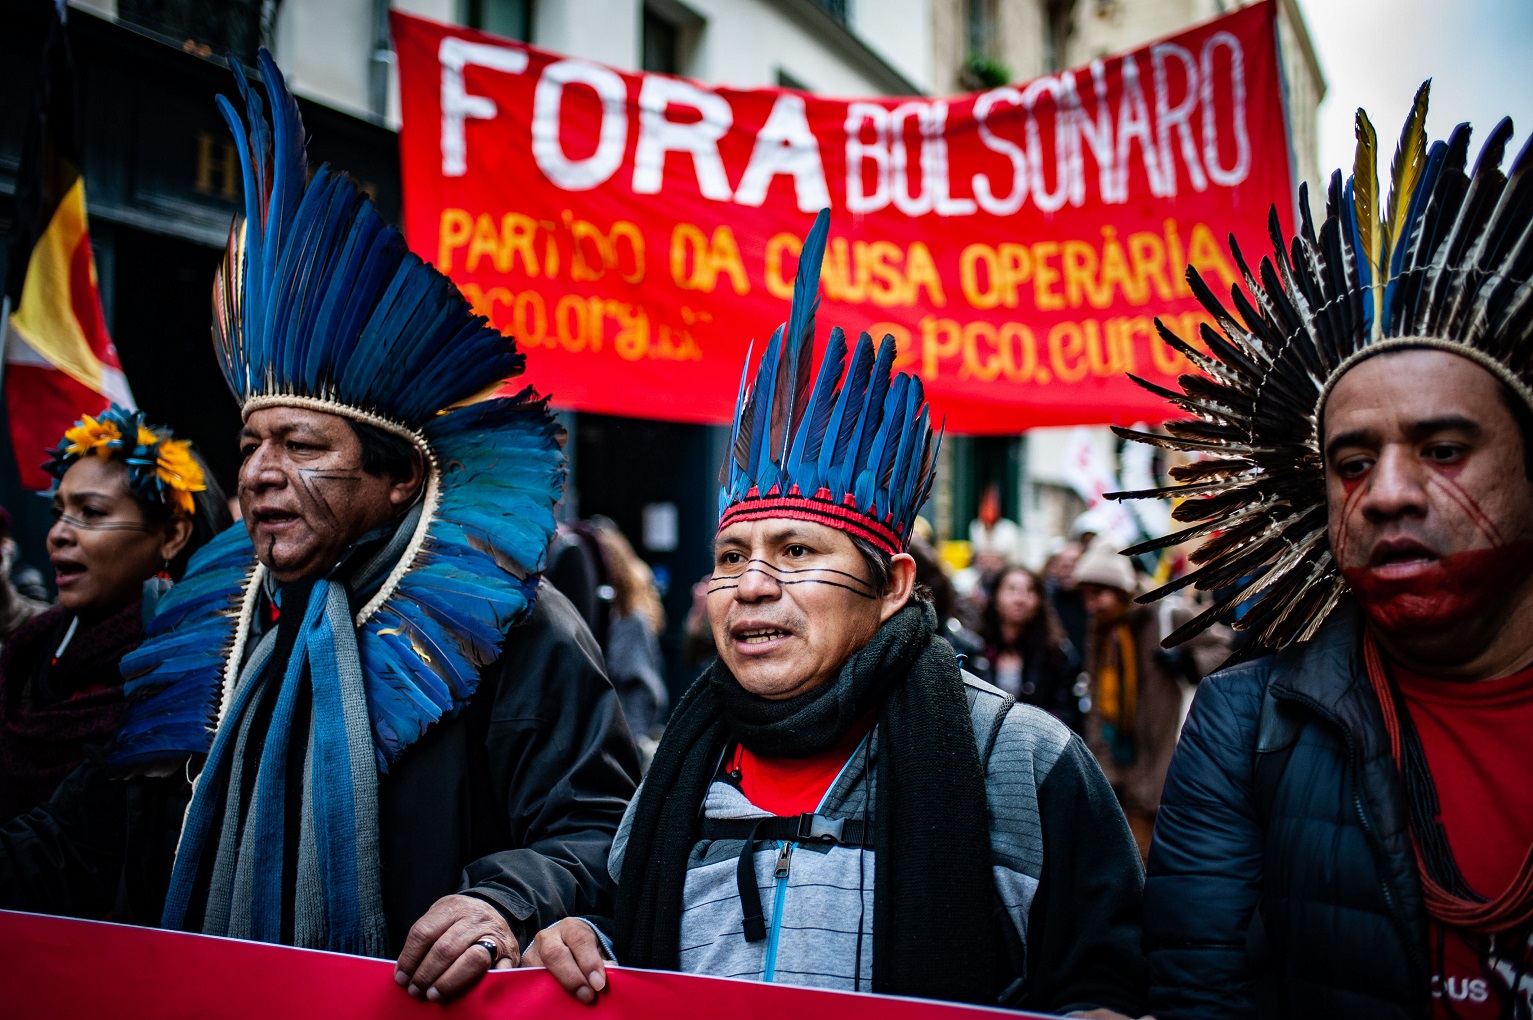 Lideranças da Articulação dos Povos Indígenas do Brasil (APIB) atravessa 12 países europeus para denunciar o aumento das violações na Amazônia. Foto Benjamin Mengelle / Hans Lucas/AFP